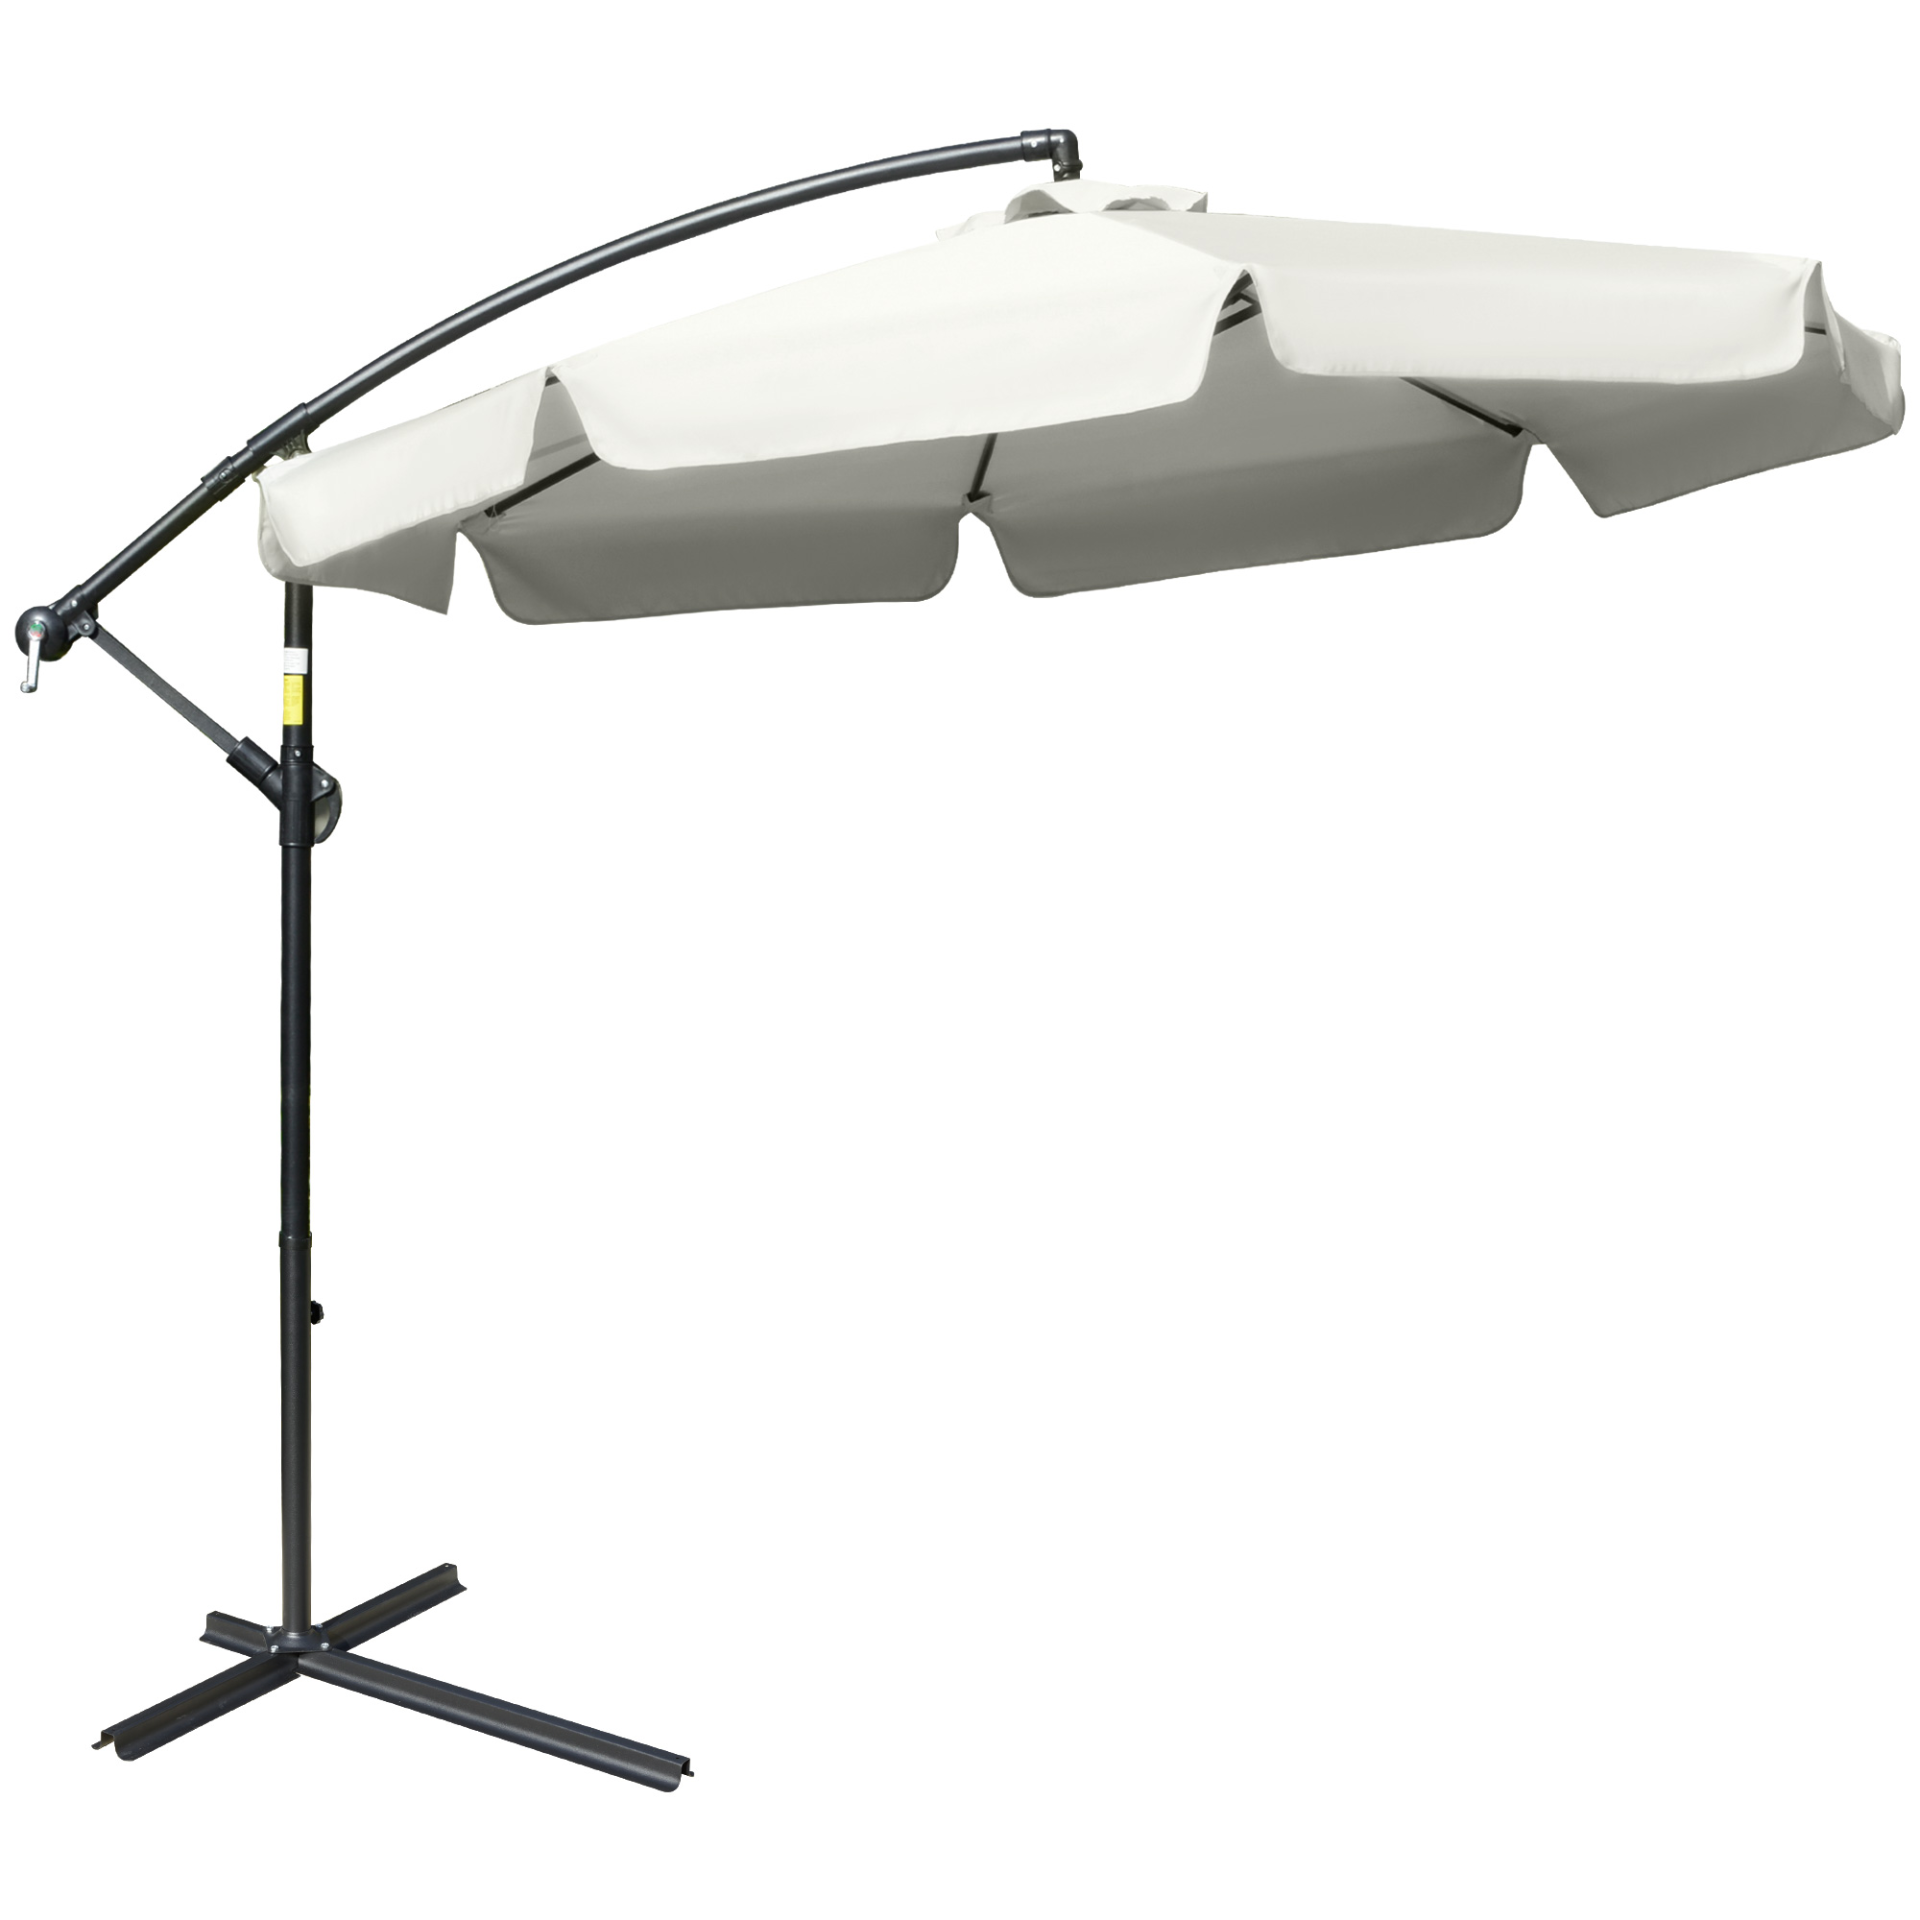 Outsunny 2.7m Garden Banana Parasol Cantilever Umbrella with Crank Handle and Cross Base for Outdoor, Hanging Sun Shade, Cream White